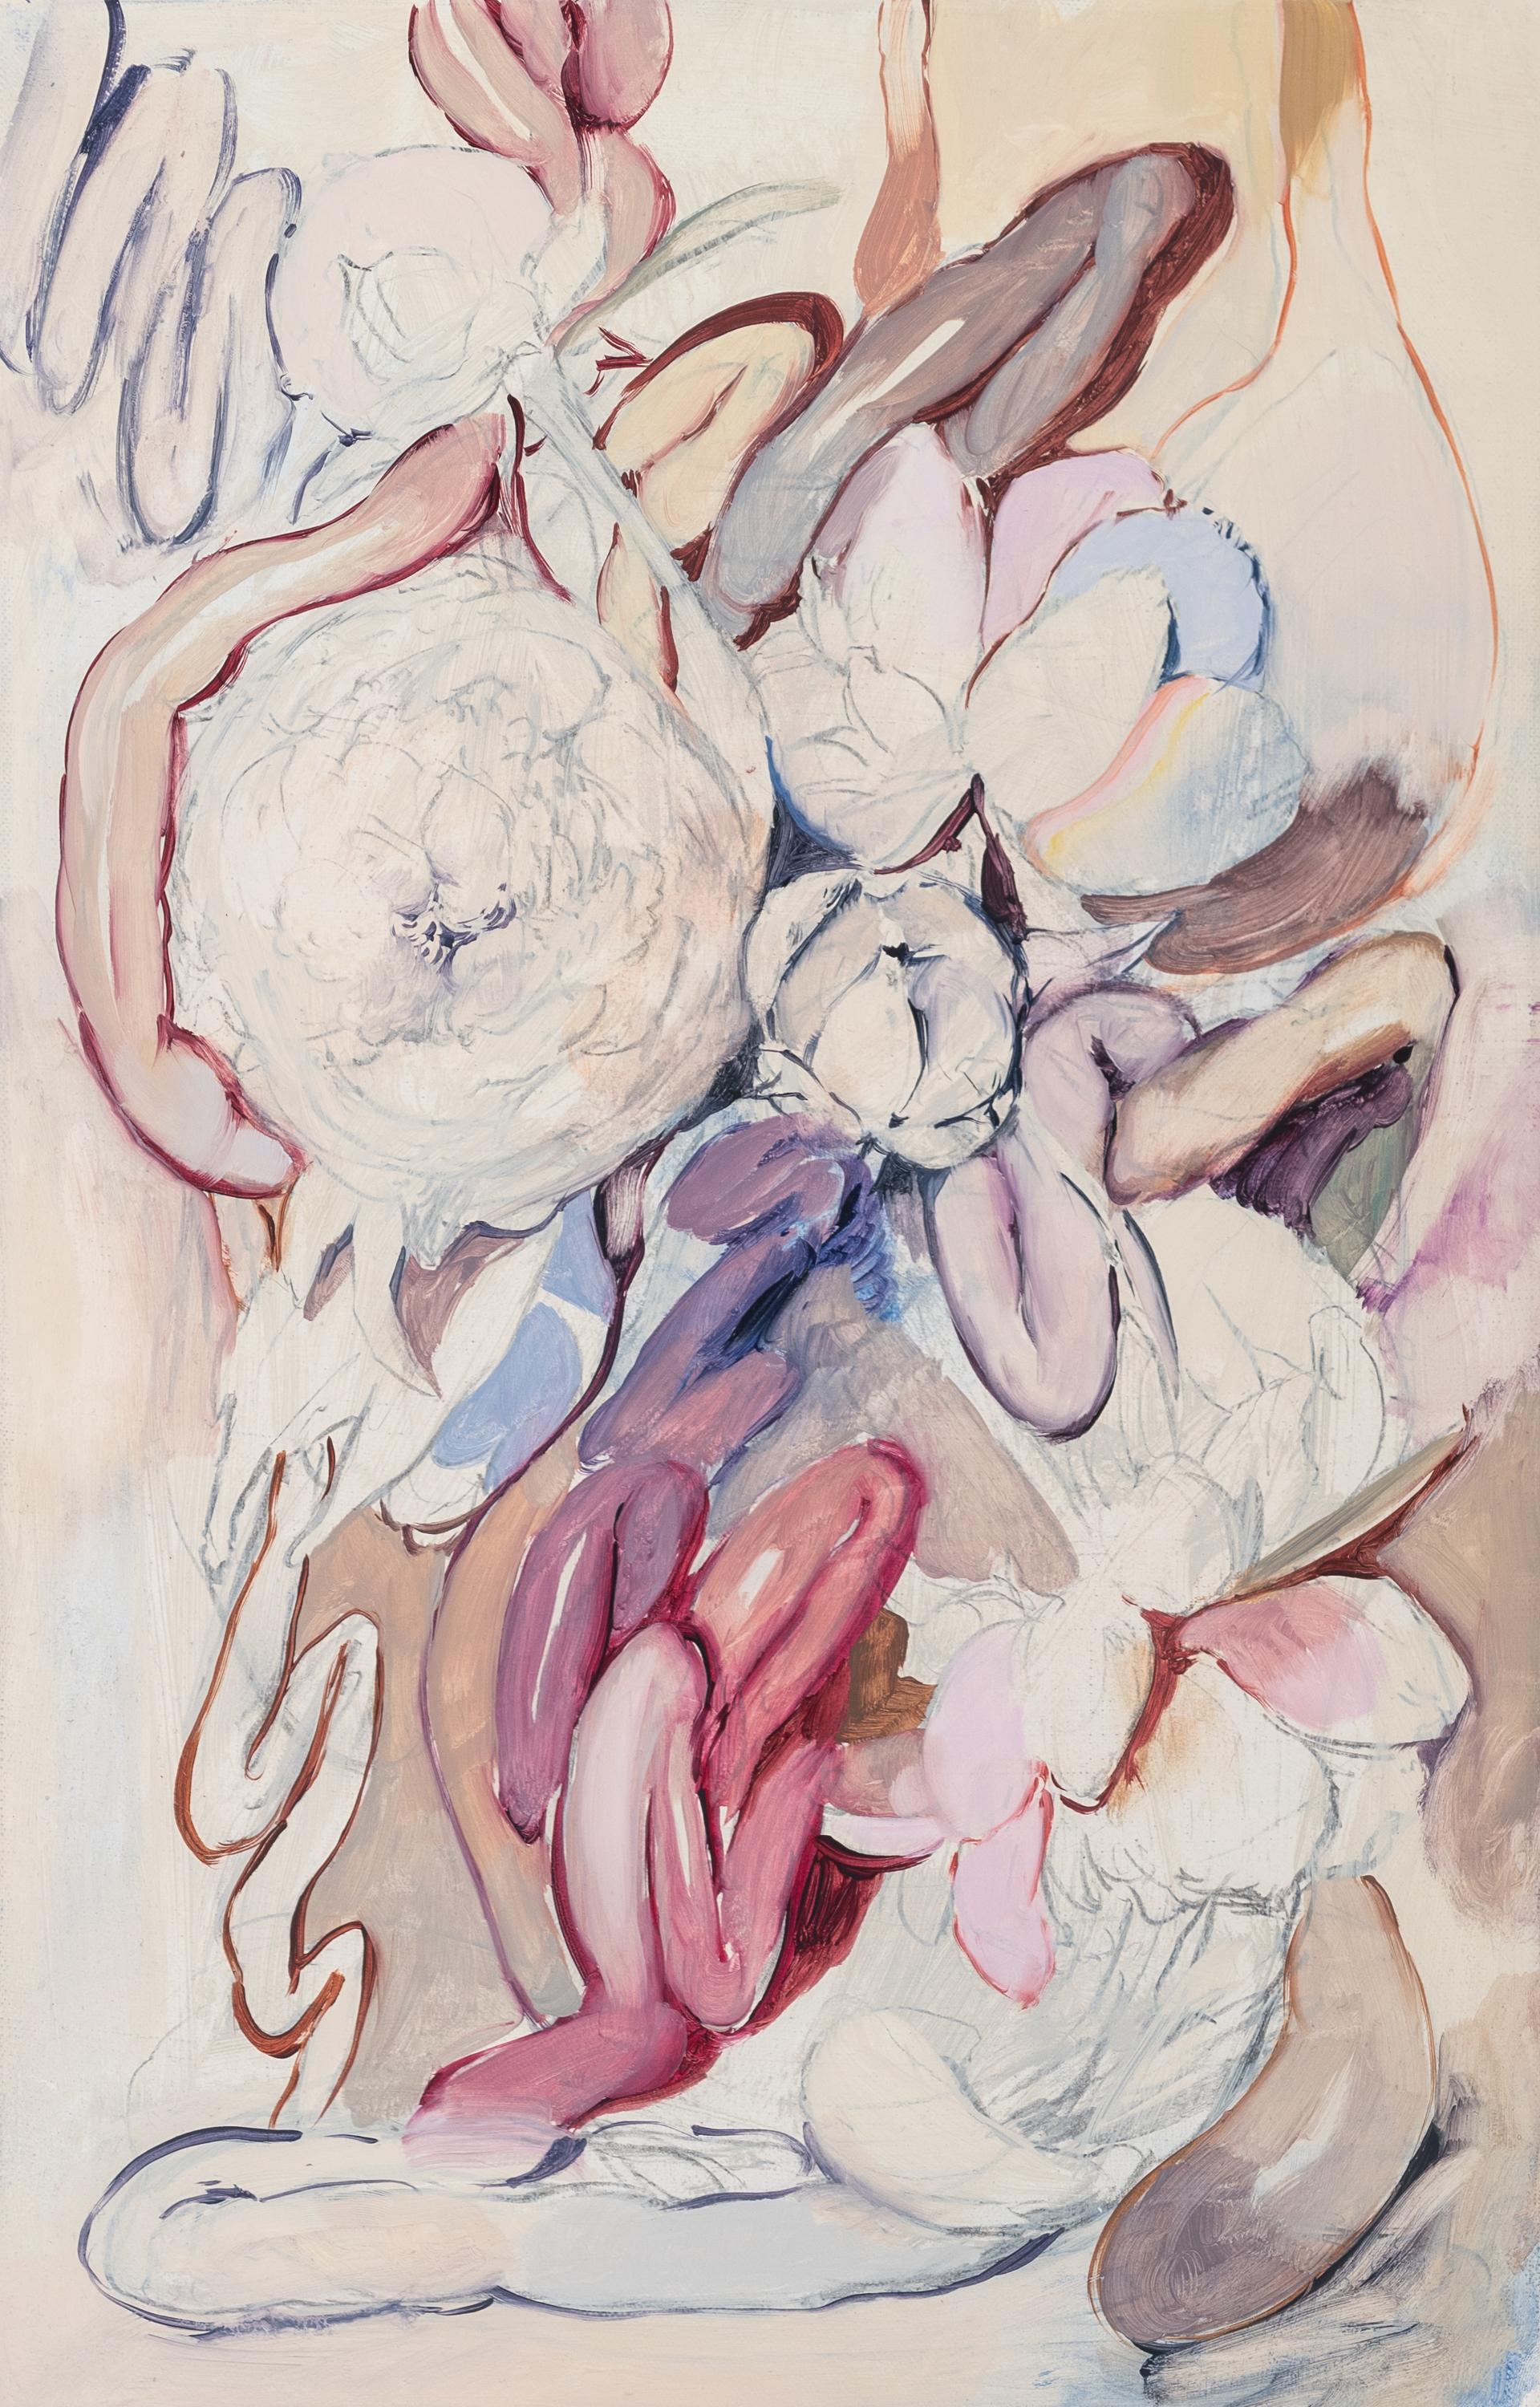 Gonzalo García Still-Life Painting - "Bouquet de flores y órganos III" flowers, organs, pastel colors, surreal